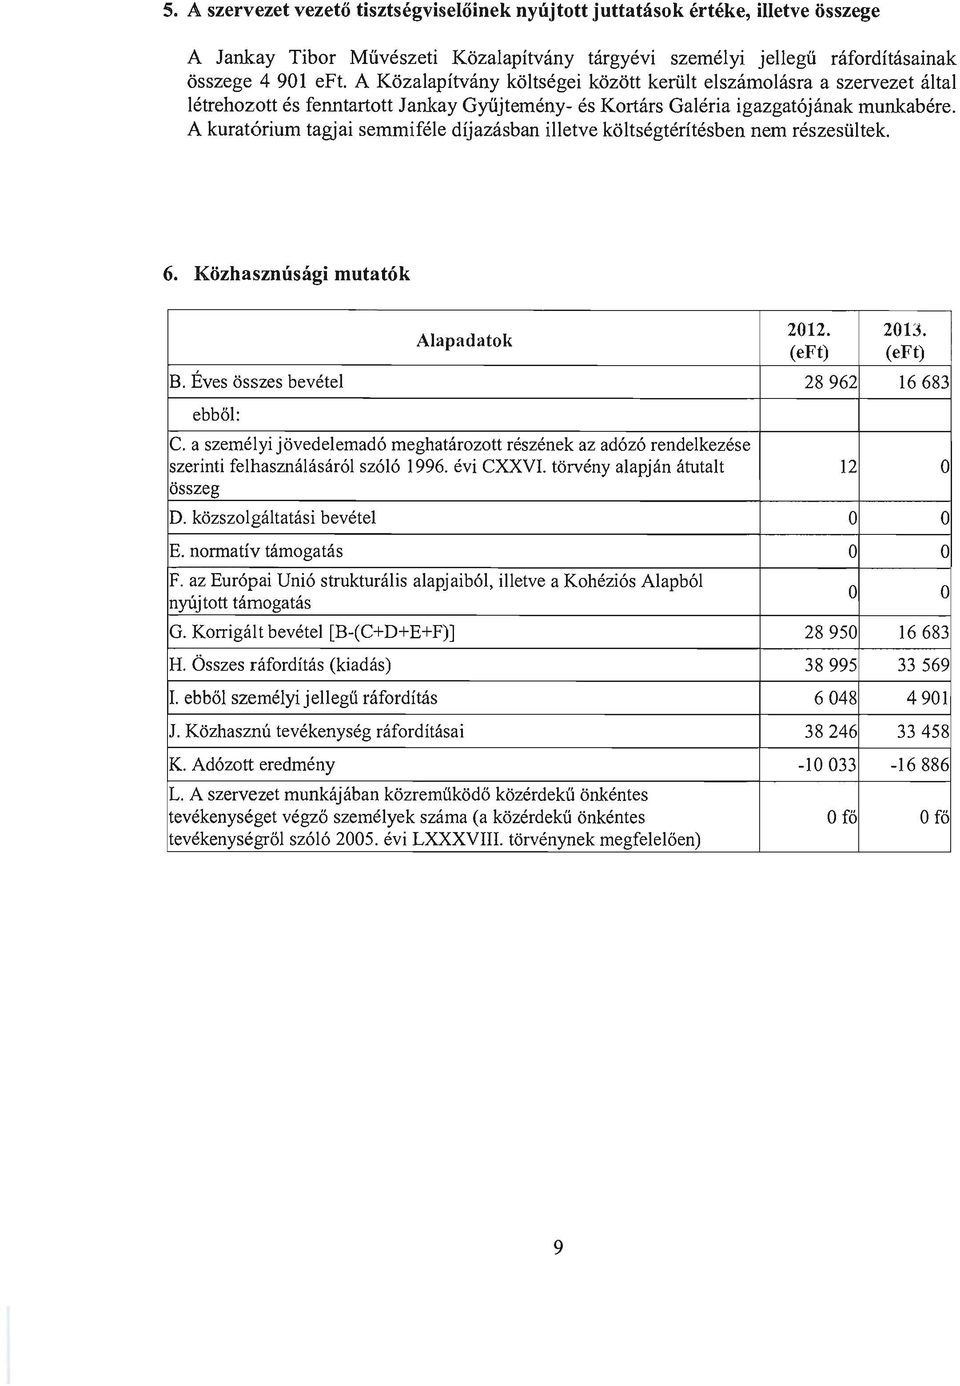 A kuratórium tagjai semmiféle díjazásban illetve költségtérítésben nem részesültek. 6. Közhasznúsági mutatók Alapadatok 2012. 2013. (eft) (eft) B. Éves összes bevétel 28962 16683 ebből: c.